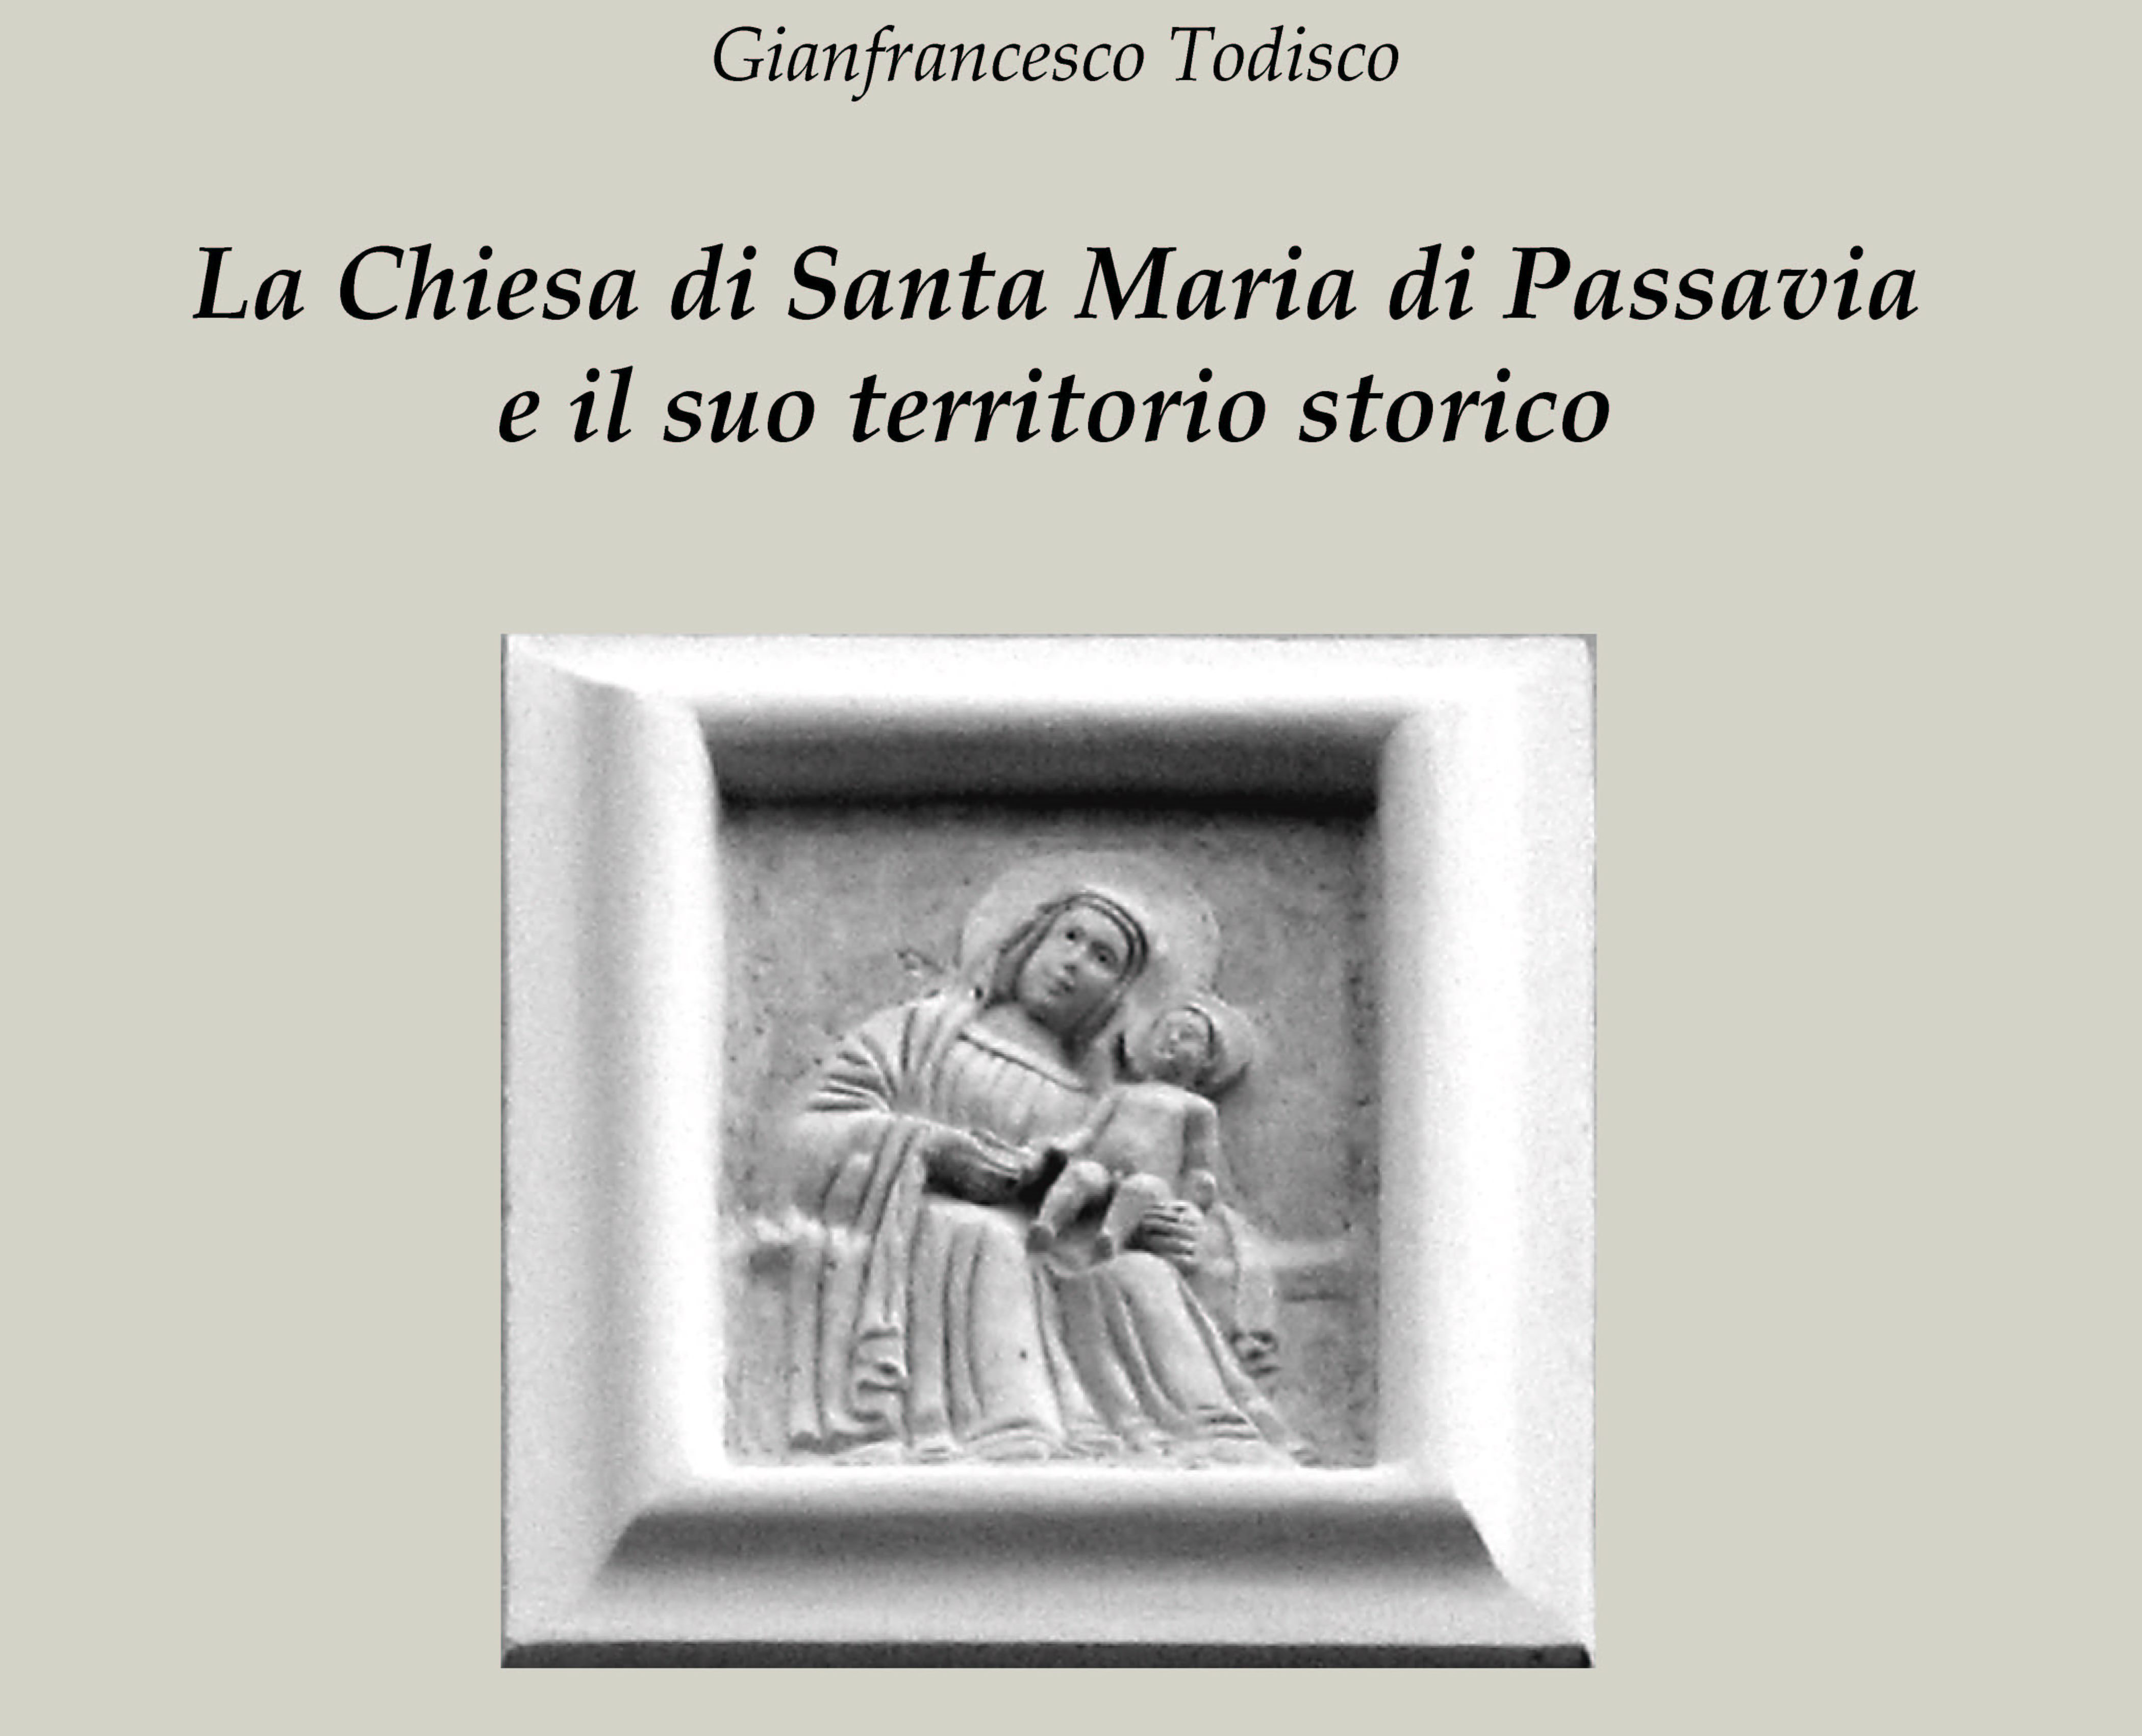 La chiesa di Santa Maria di Passavia e il suo territorio storico